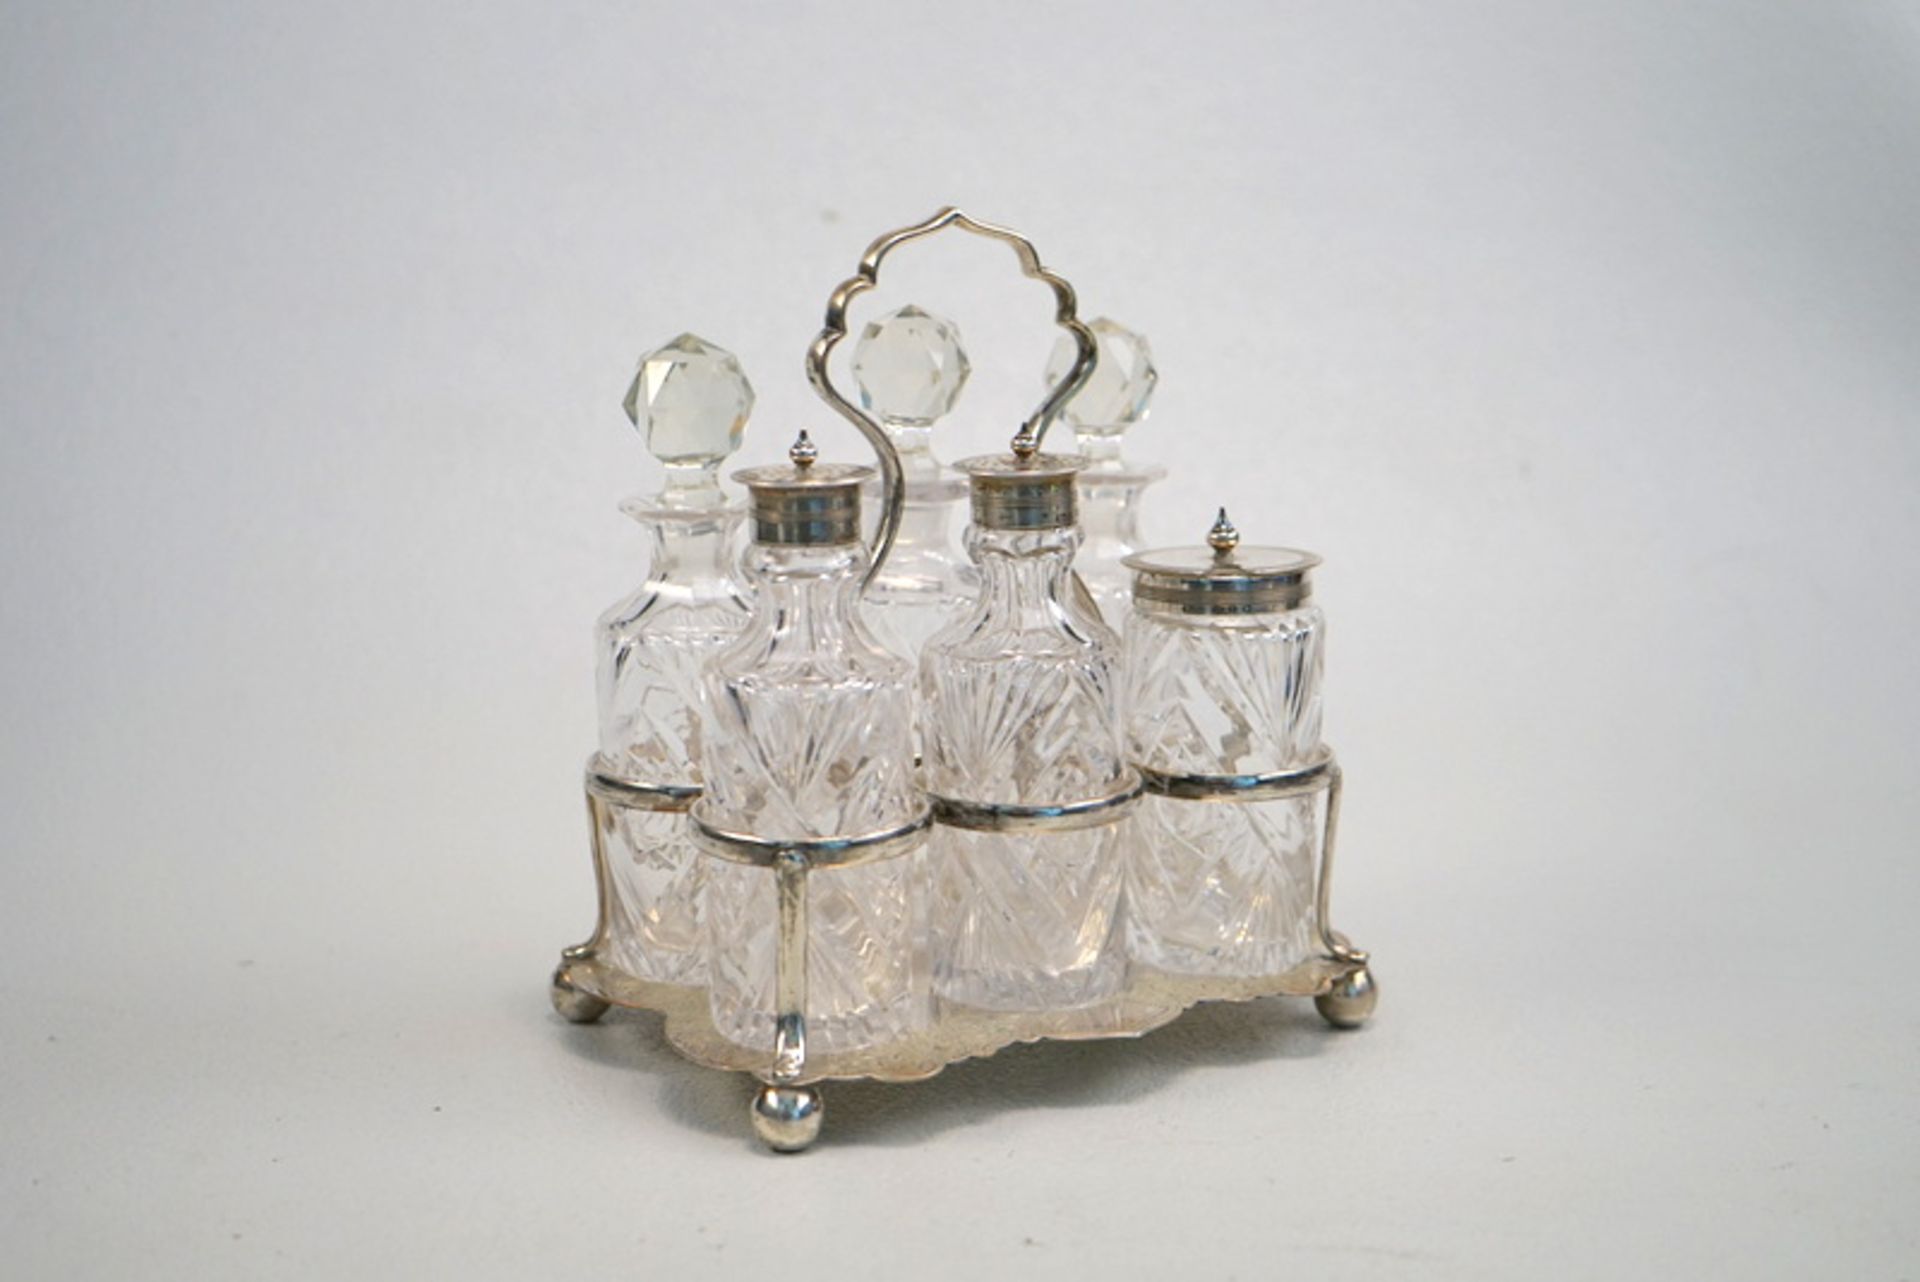 Komplette Menage, Glas mit 925er Sterling, Birmingham 1897,dickwandiges Kristallglas geschliffen,